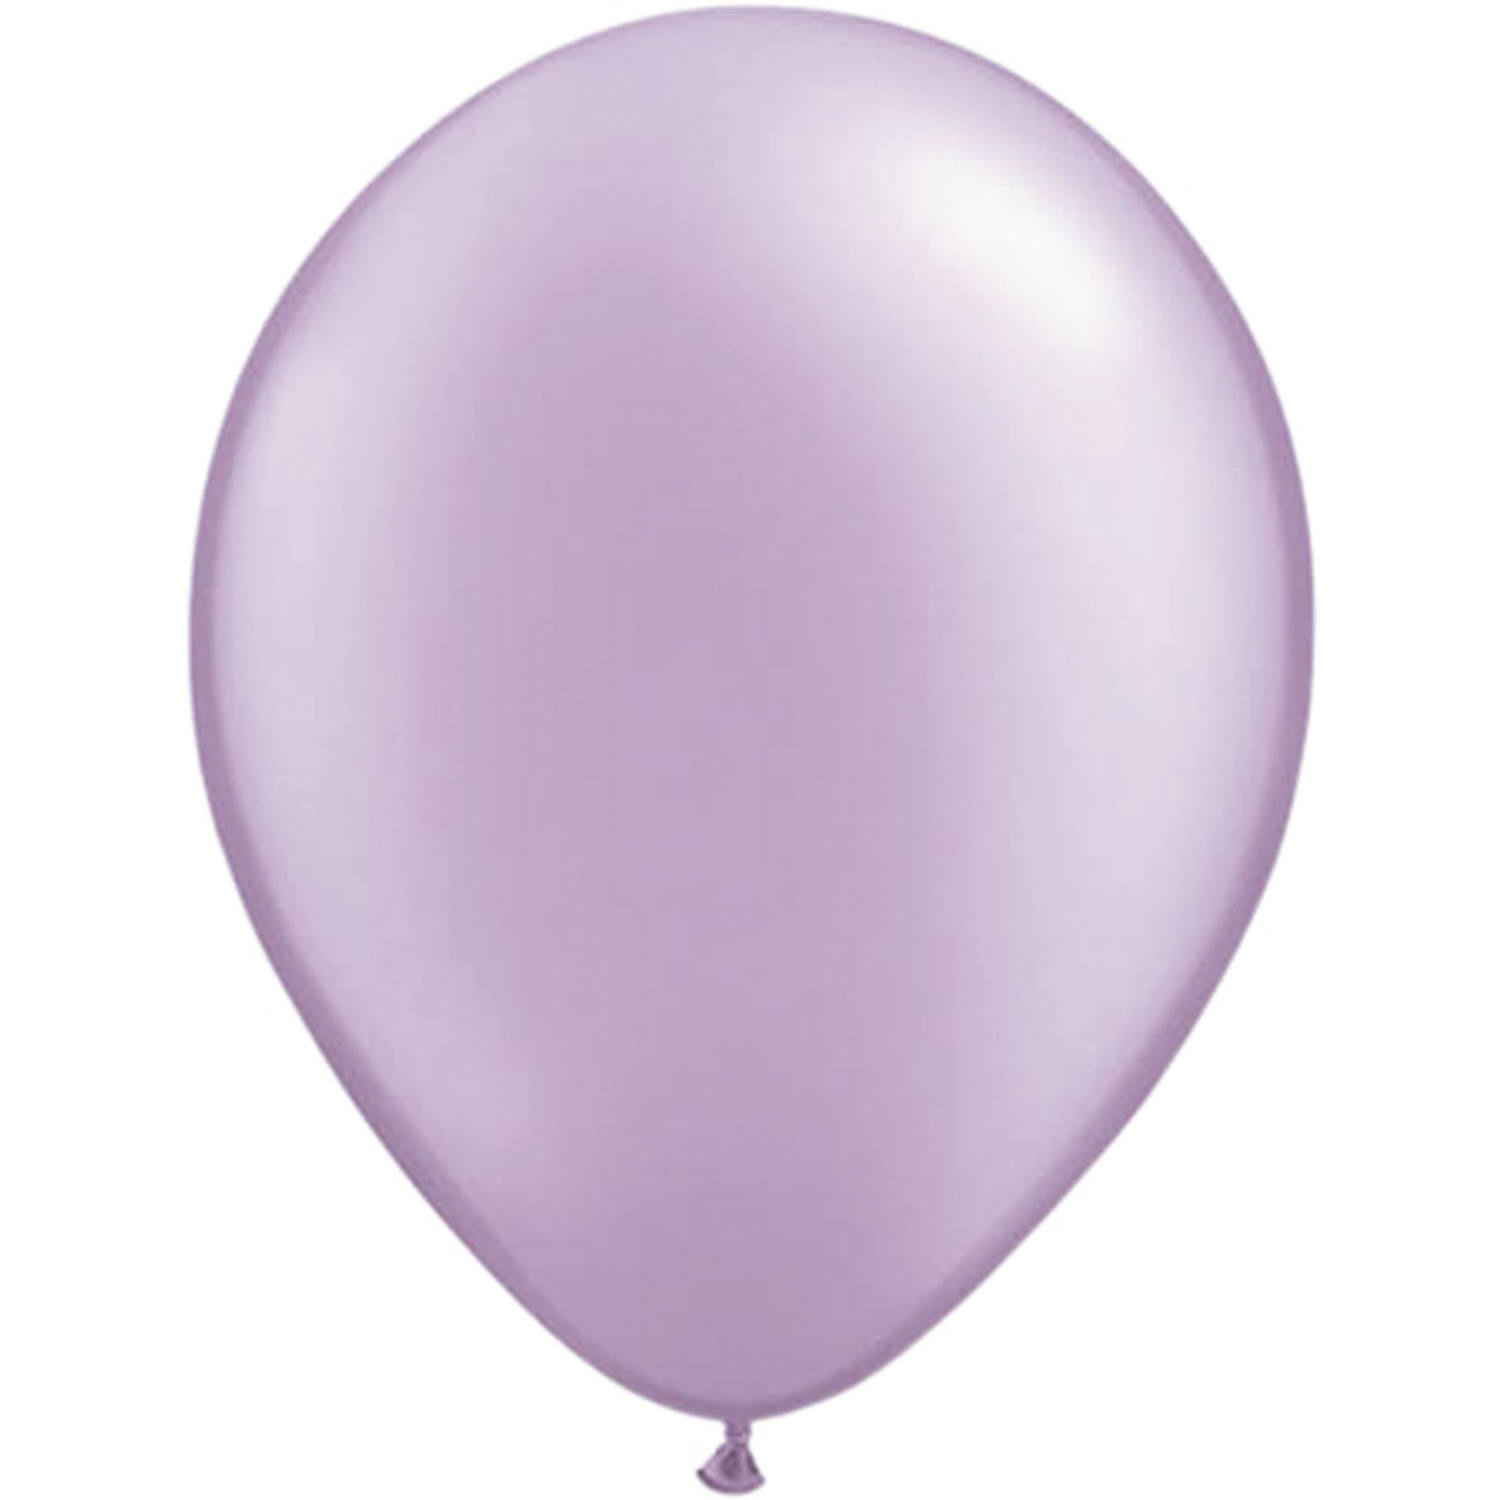 Op en neer gaan JEP Humoristisch Goedkope Lavendel Paarse Metallic Ballonnen Online Kopen - Feestartikelen &  Versiering - Feestartikelen Specialist